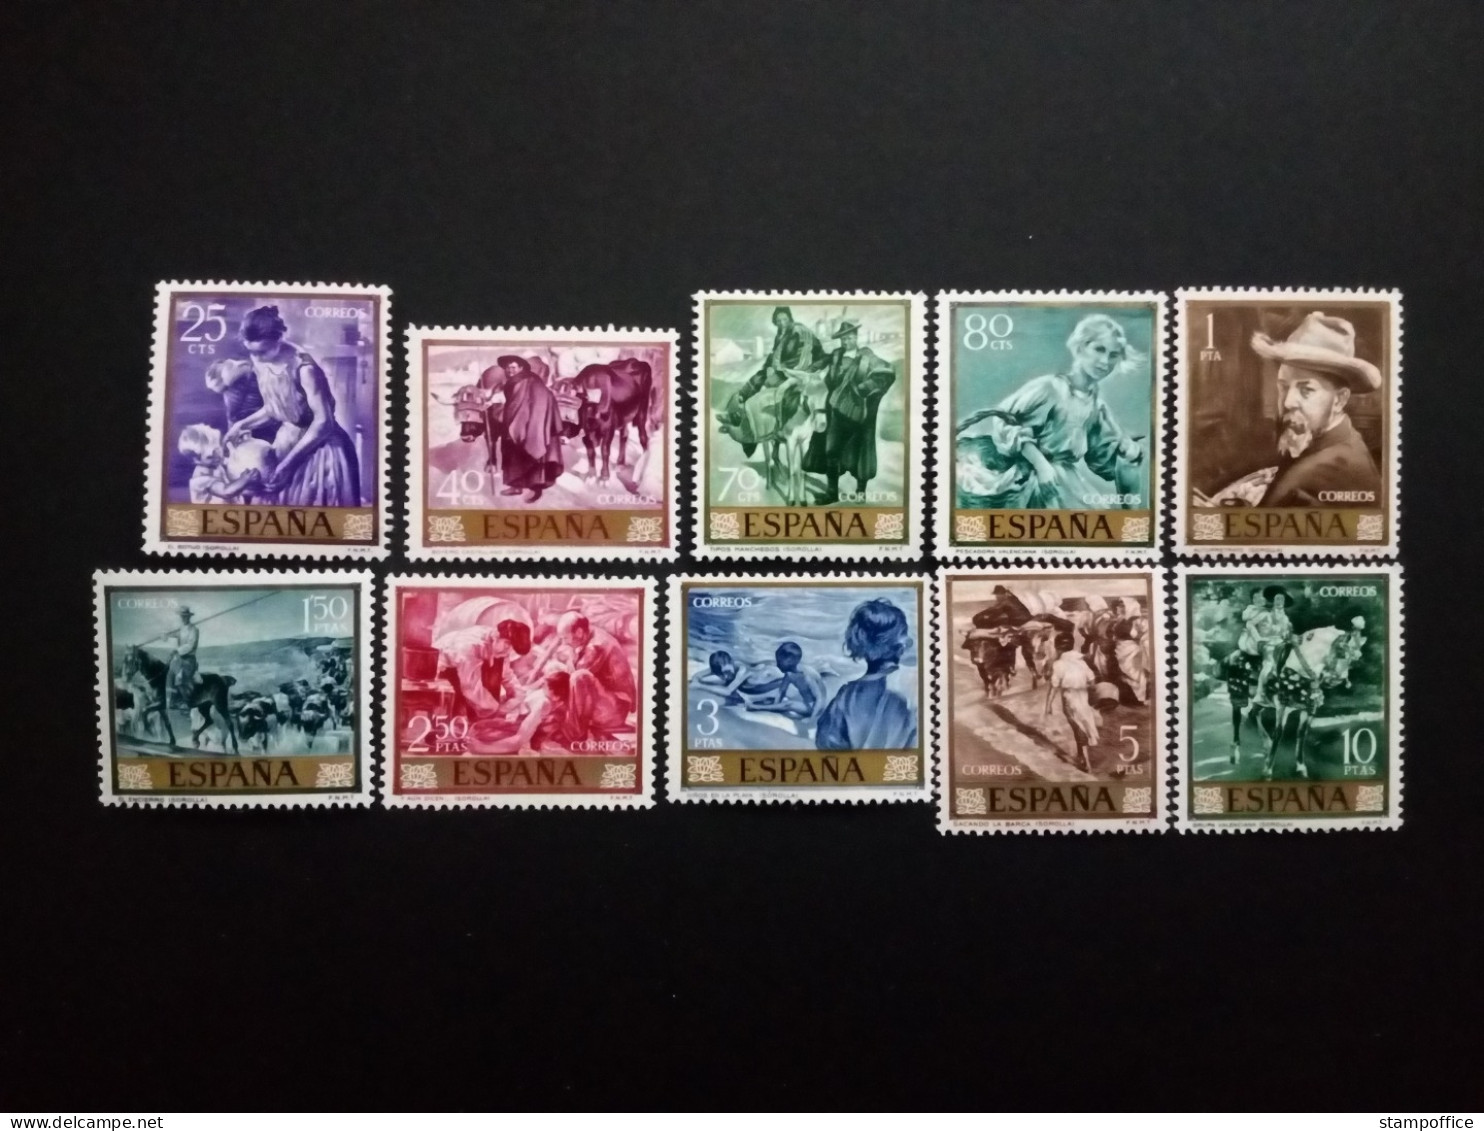 SPANIEN MI-NR. 1445-1454 POSTFRISCH(MINT) GEMÄLDE (VIII) JOAQUIN SOROLLA TAG DER BRIEFMARKE 1964 - Unused Stamps